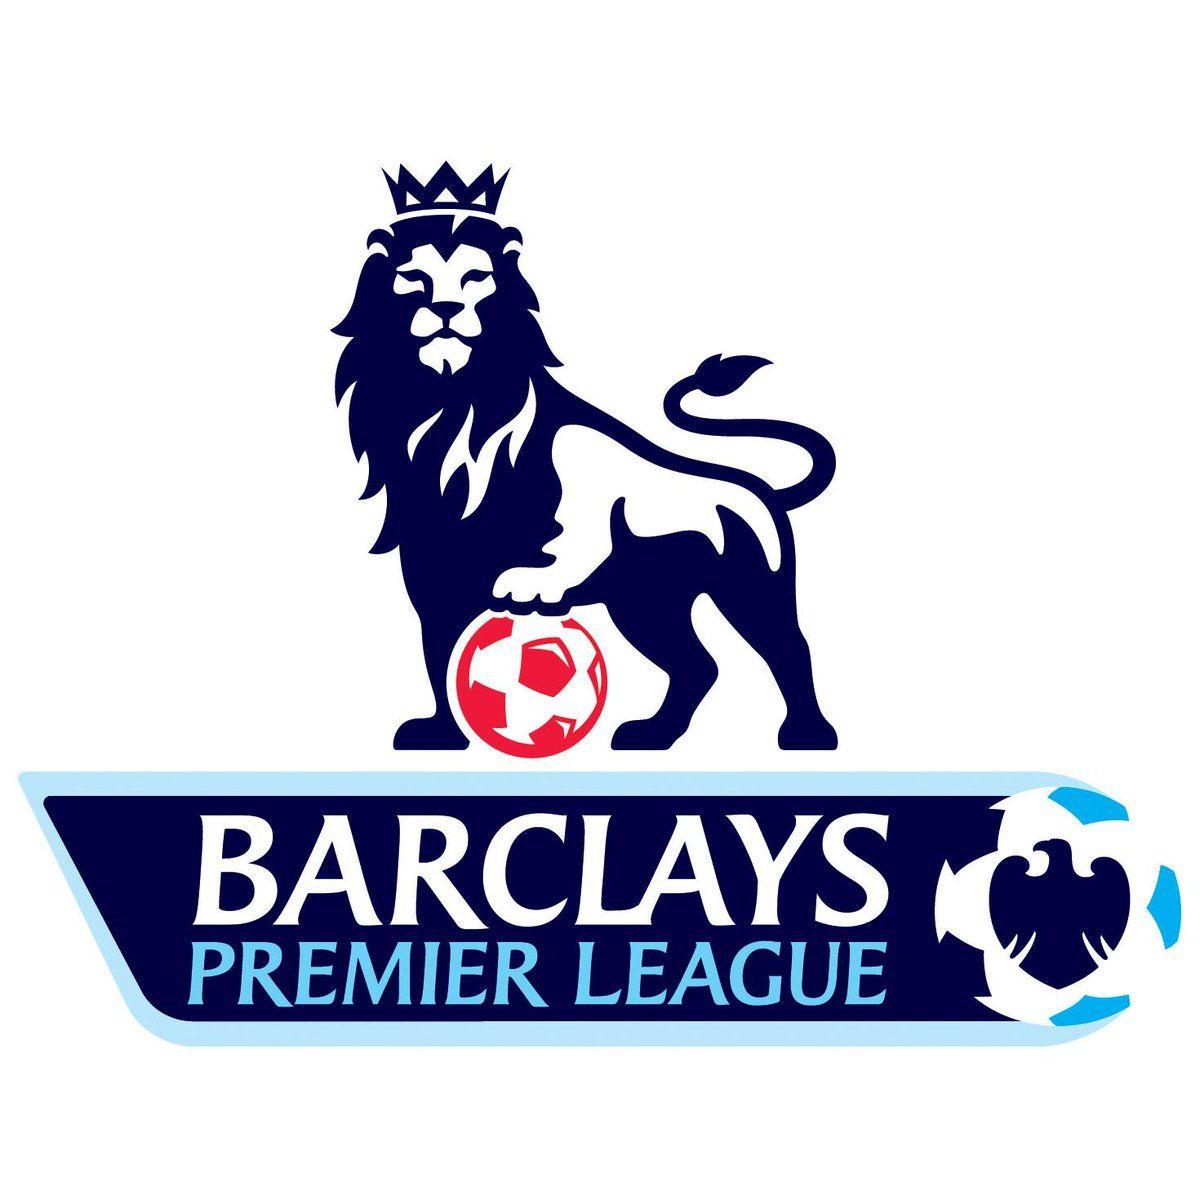 Blue Lion Crown Logo - Jerry Blue Lion (EPL Logo Chelsea Logo) Now Has Got